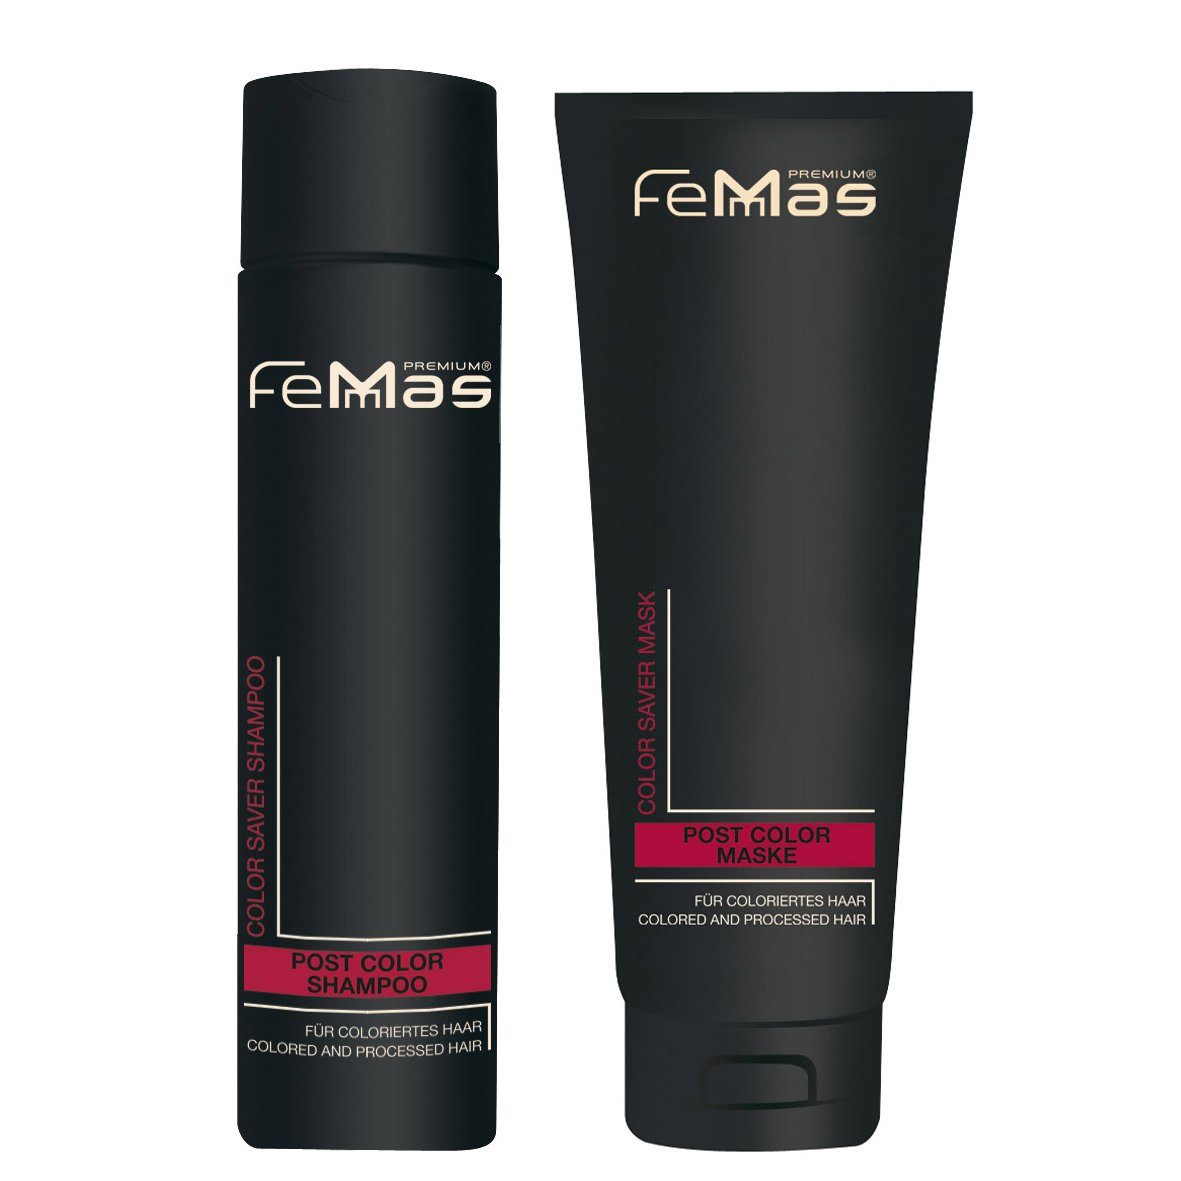 Maske Saver Shampoo 250ml Color Premium FemMas + Haarpflege-Set Femmas 250ml Color Saver